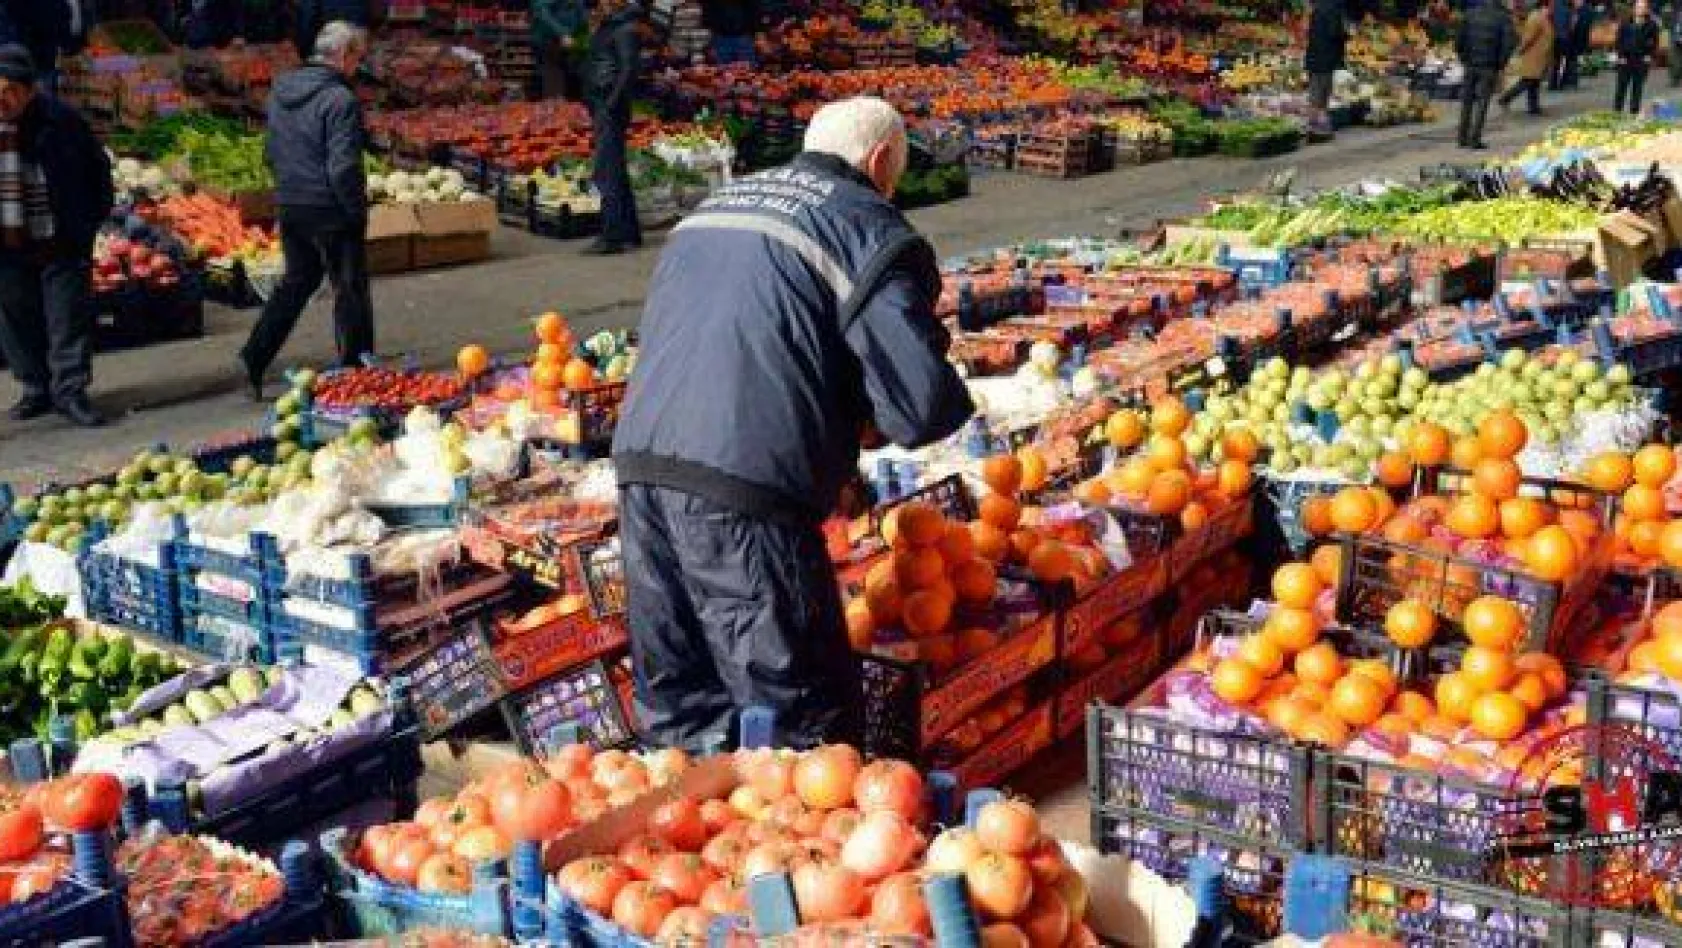 Ambalajsız taşınan meyve ve sebzelere yasak geliyor